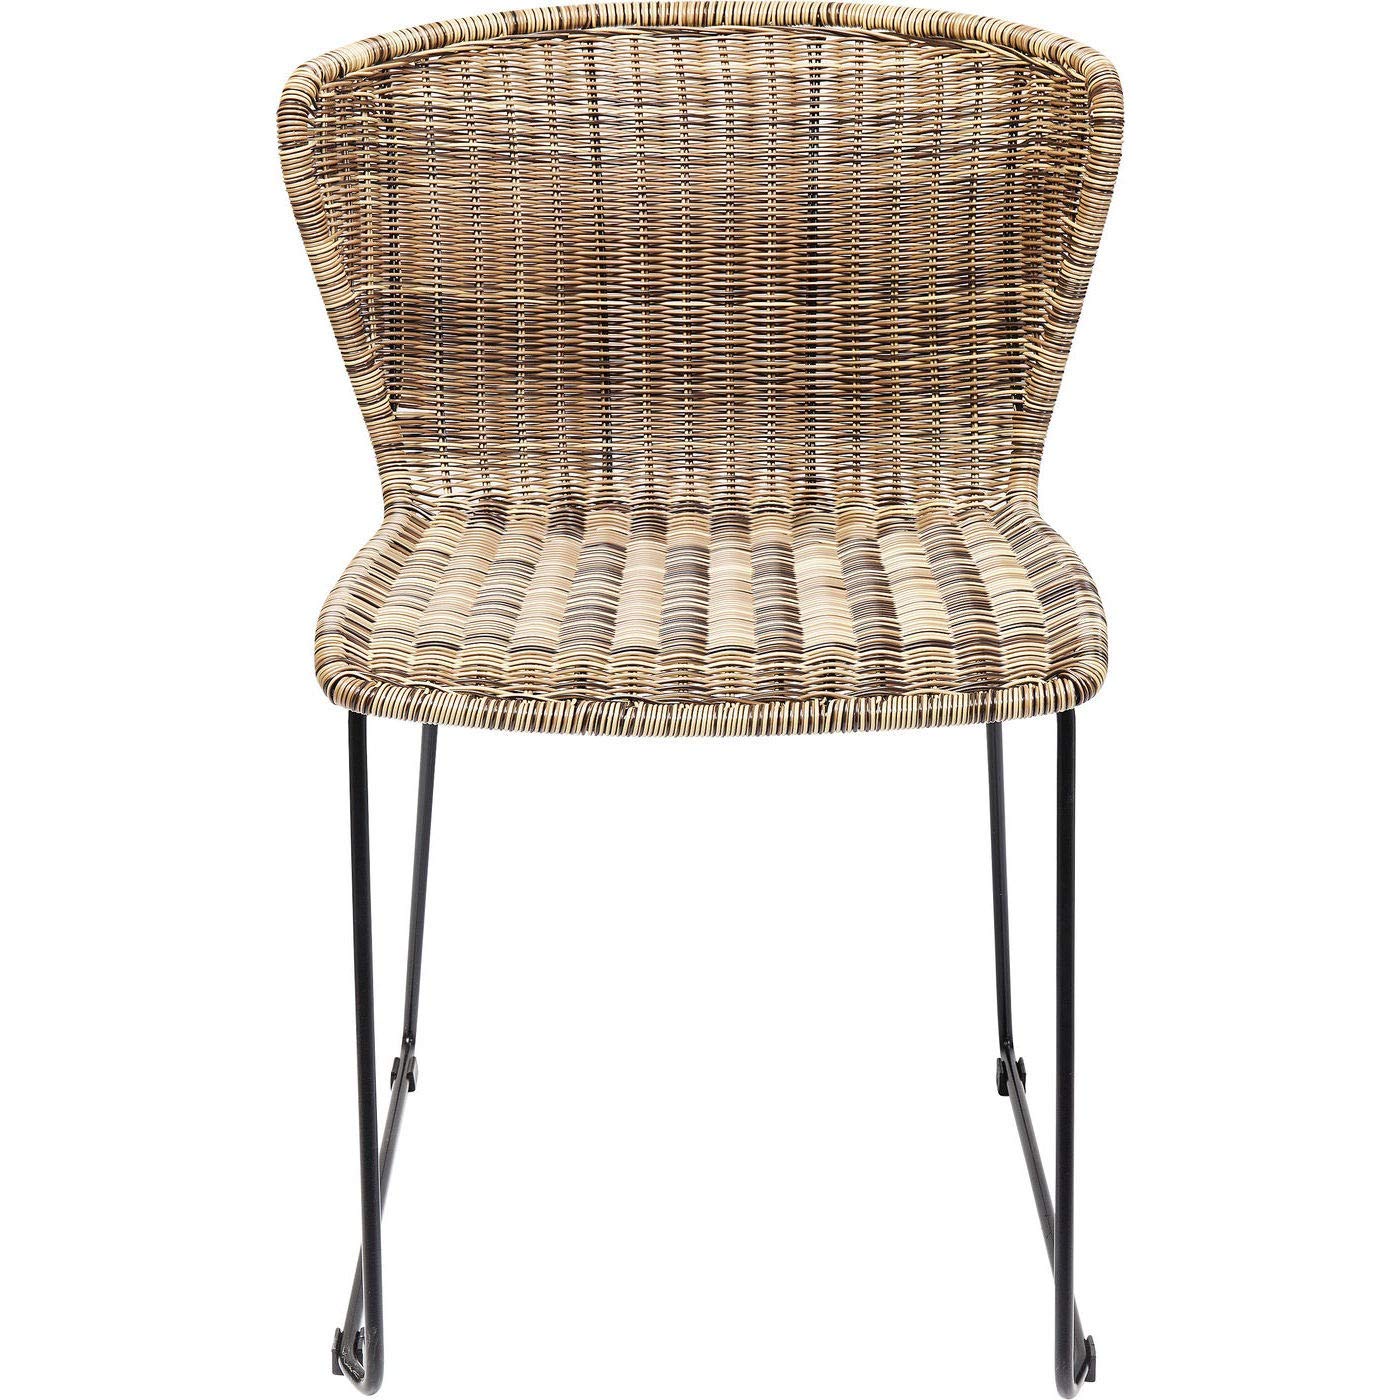 Kare Design Stuhl Sansibar, Esstimmerstuhl in Naturfarben, mit breiter Rückenlehne, ohne Armlehnen, Gestell als Kufe in schwarz (H/B/T) 78x53x56cm